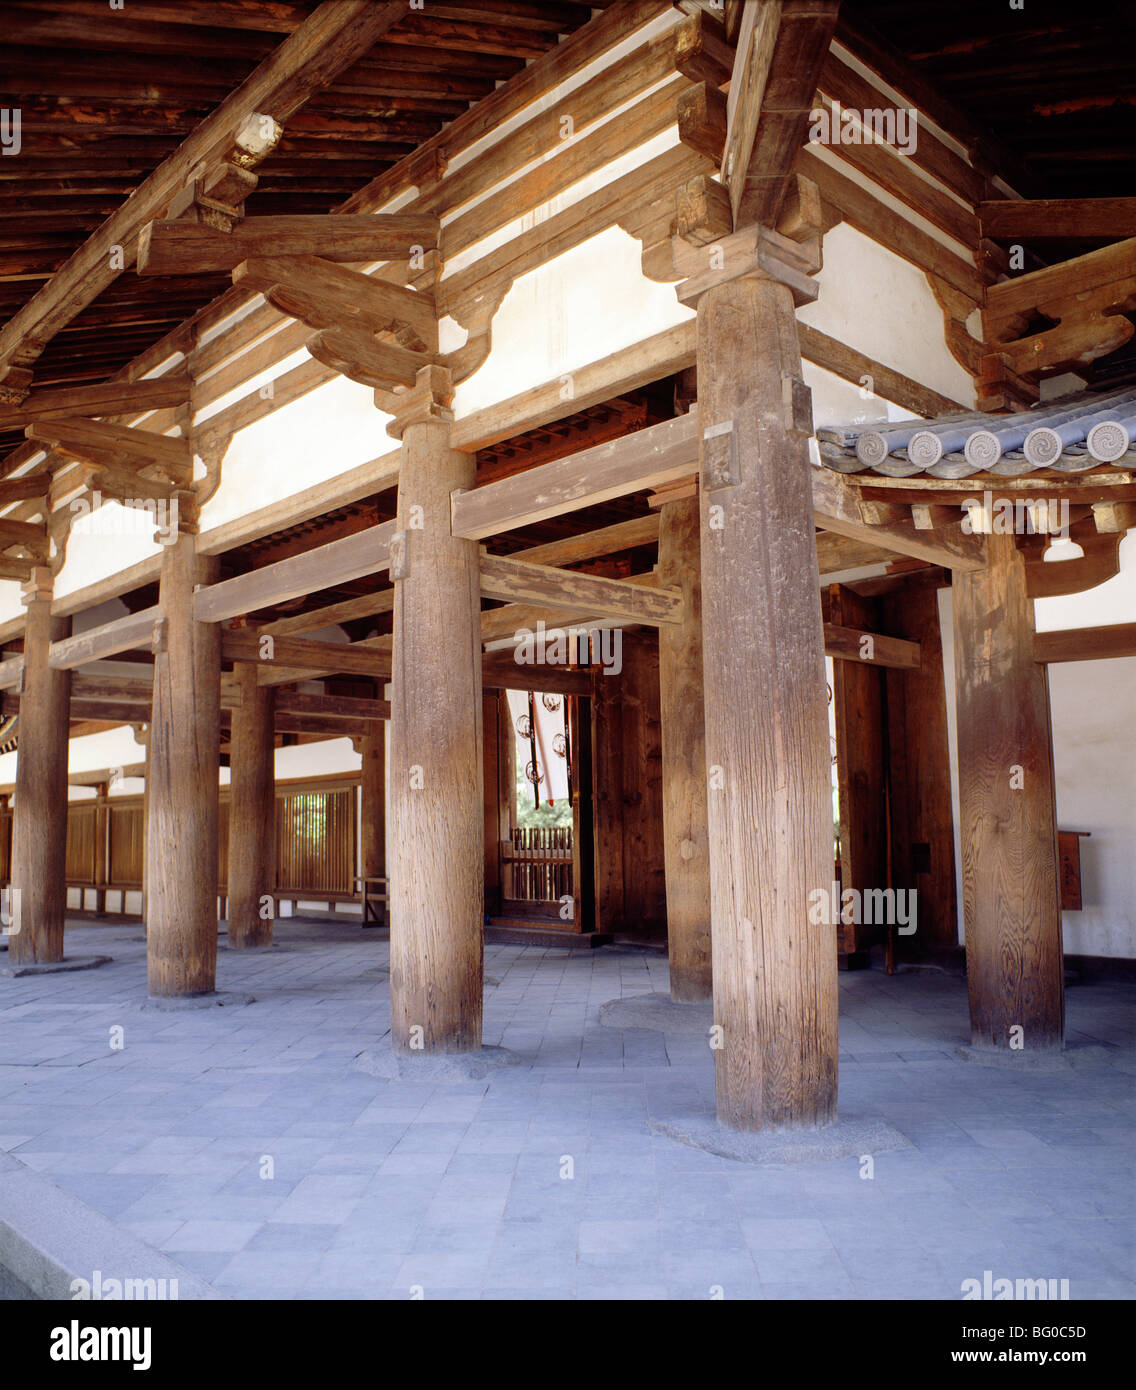 Le Temple Horyuji, contenant la plus ancienne des structures en bois, UNESCO World Heritage Site, Nara, Japon, Asie Banque D'Images